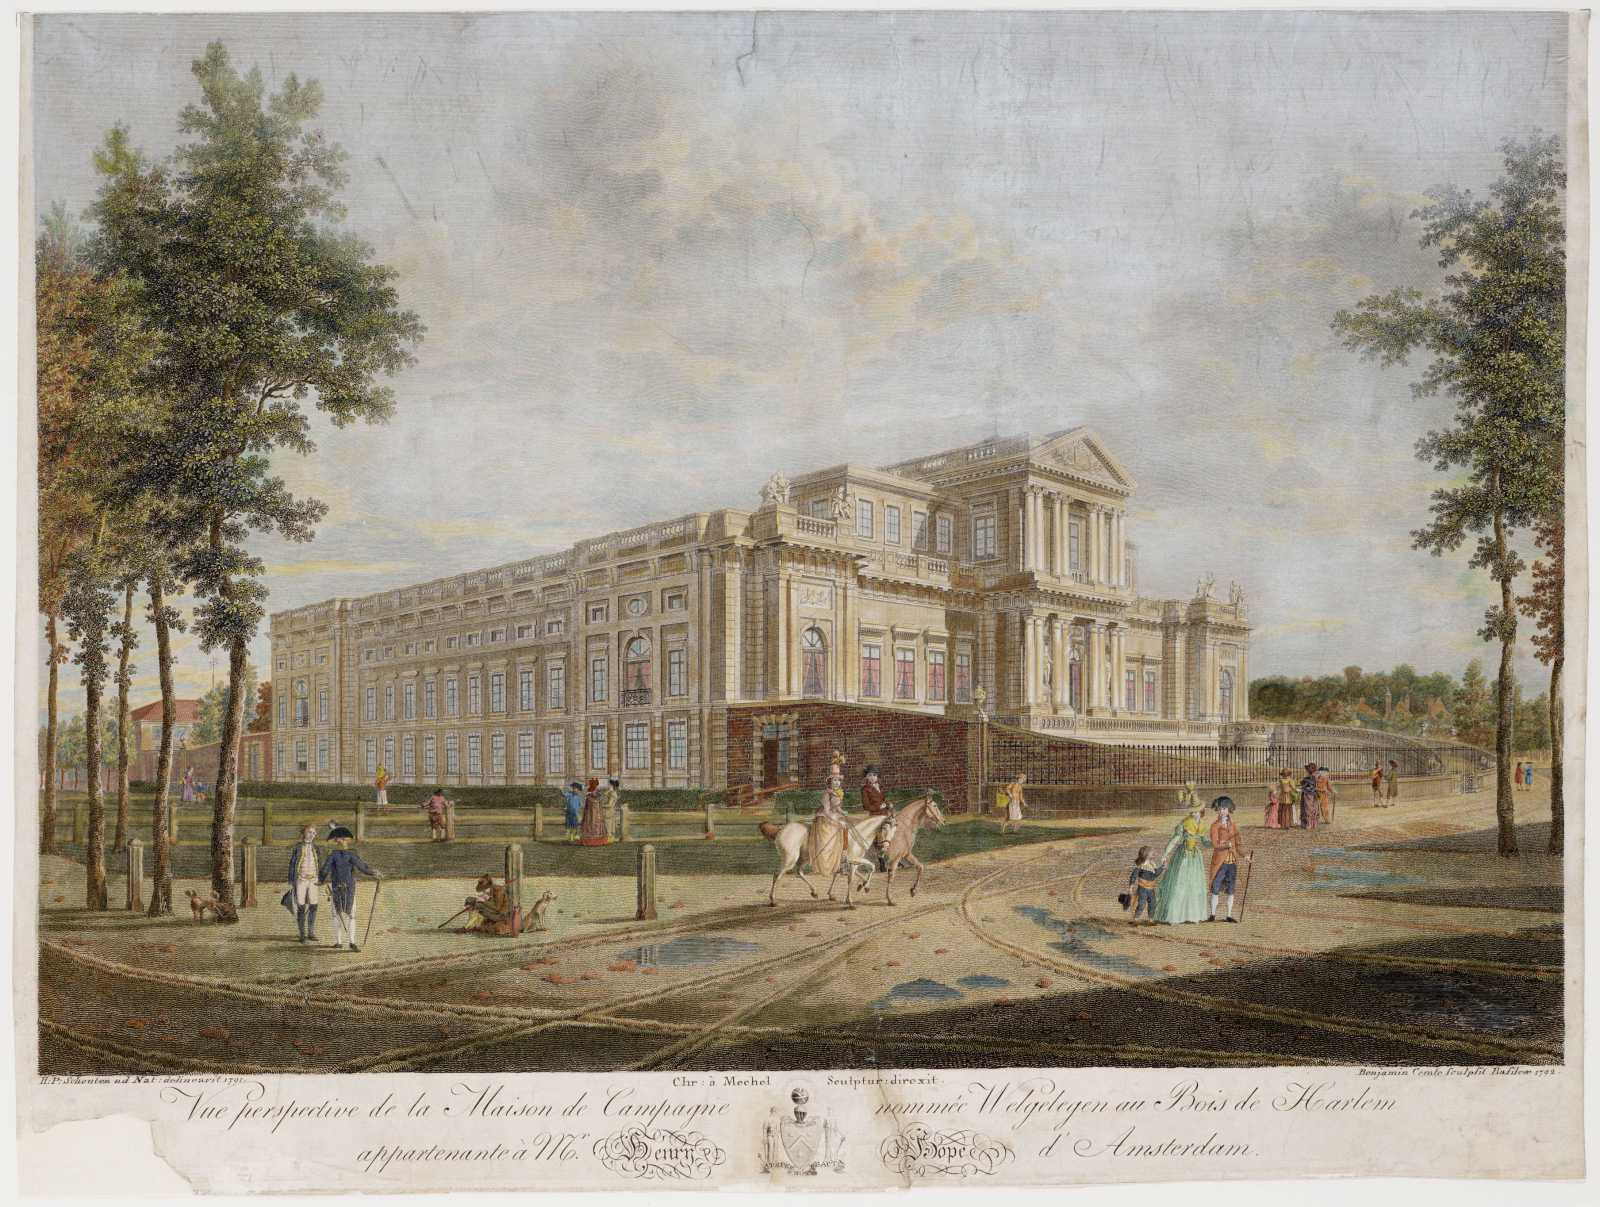 Op deze afbeelding zie je personen uit verschillende standen weergegeven. Op de achtergrond zie je Paviljoen Welgelegen 1792